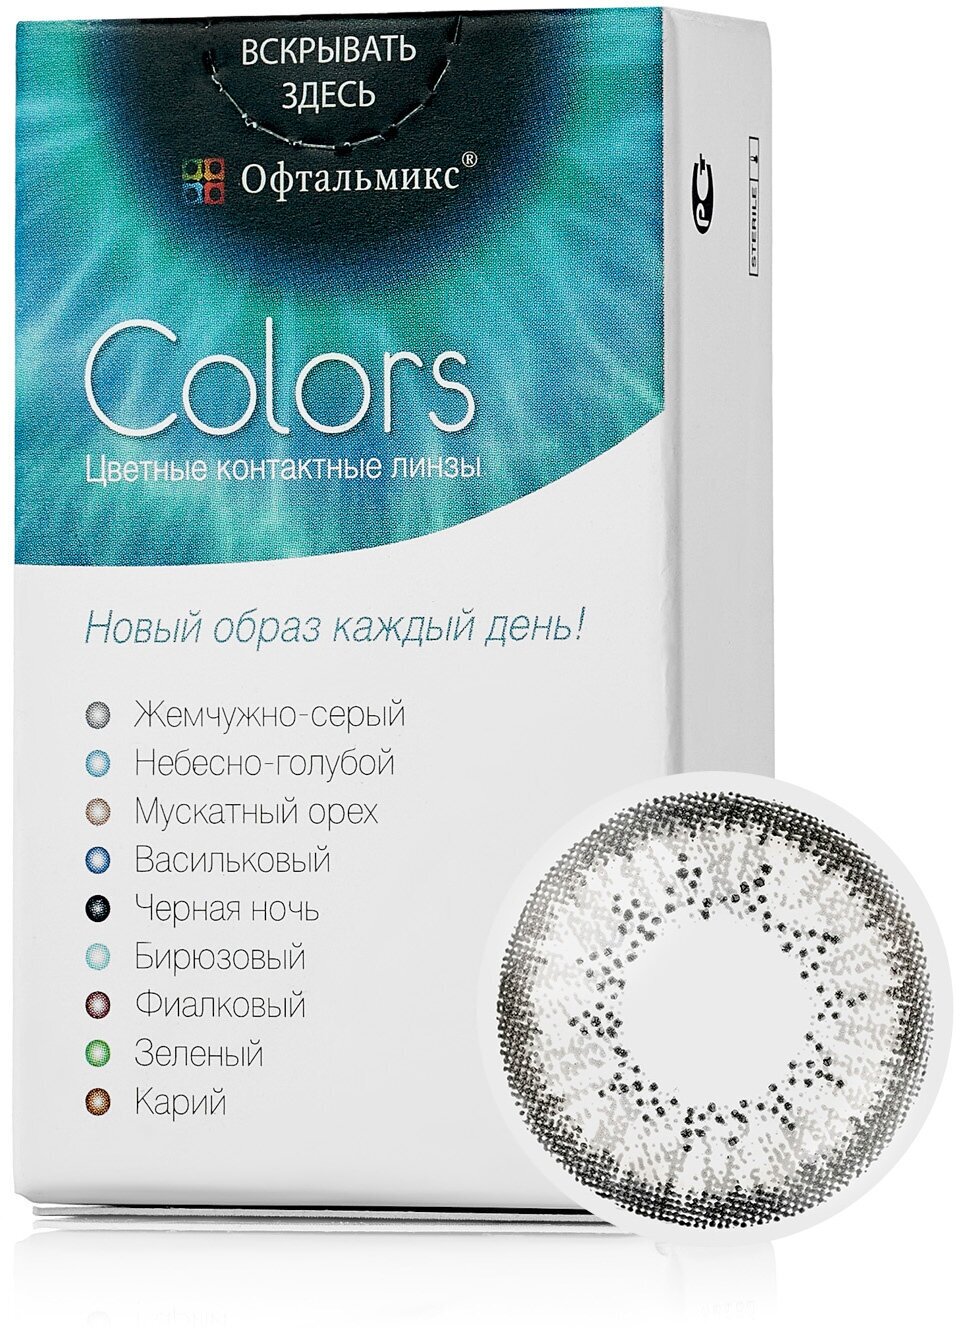 Цветные контактные линзы Офтальмикс Color Gray (жемчужно-серый) R8.6 -2.5D (2шт.)